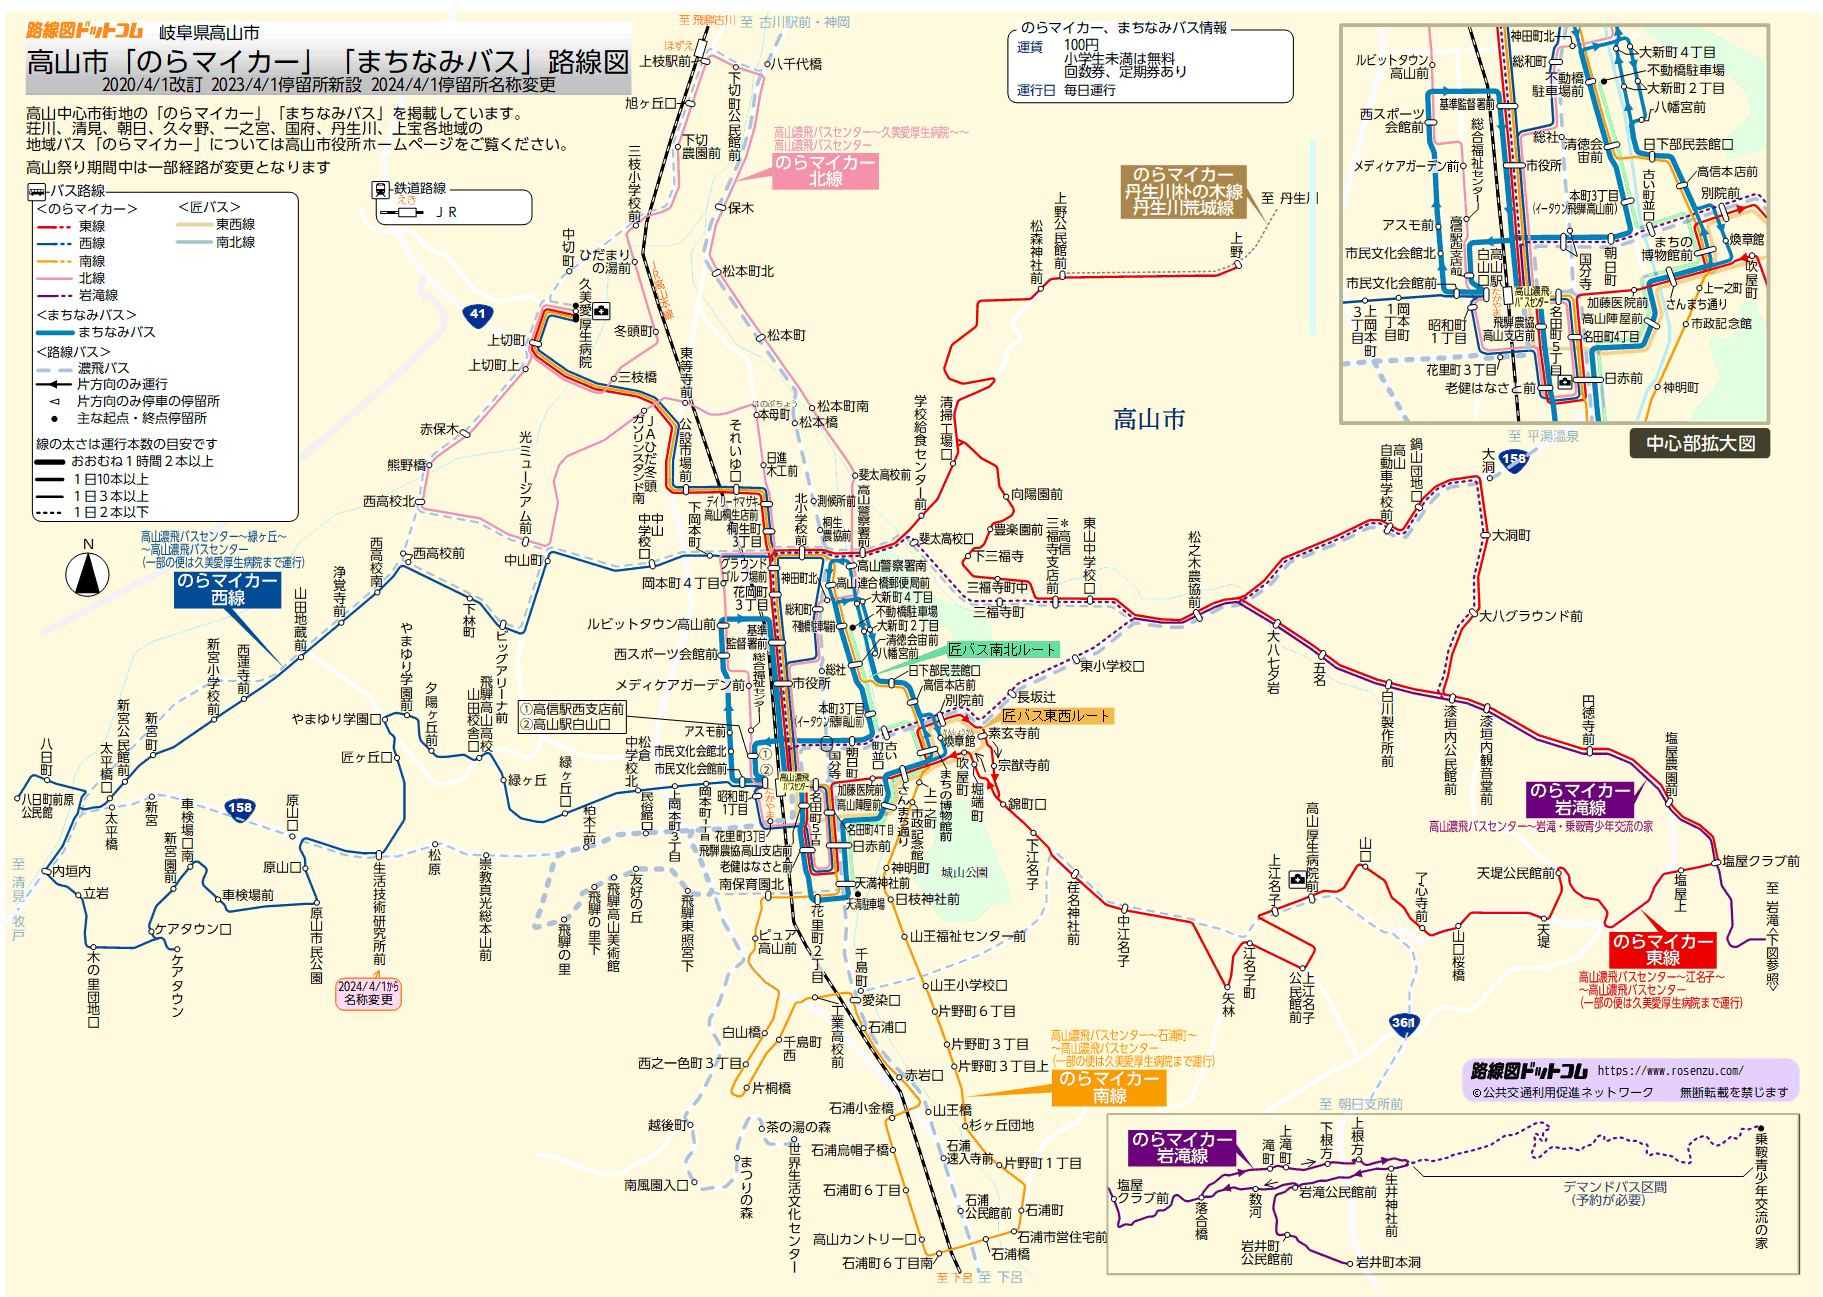 高山市のらマイカー、まちなみバス路線図